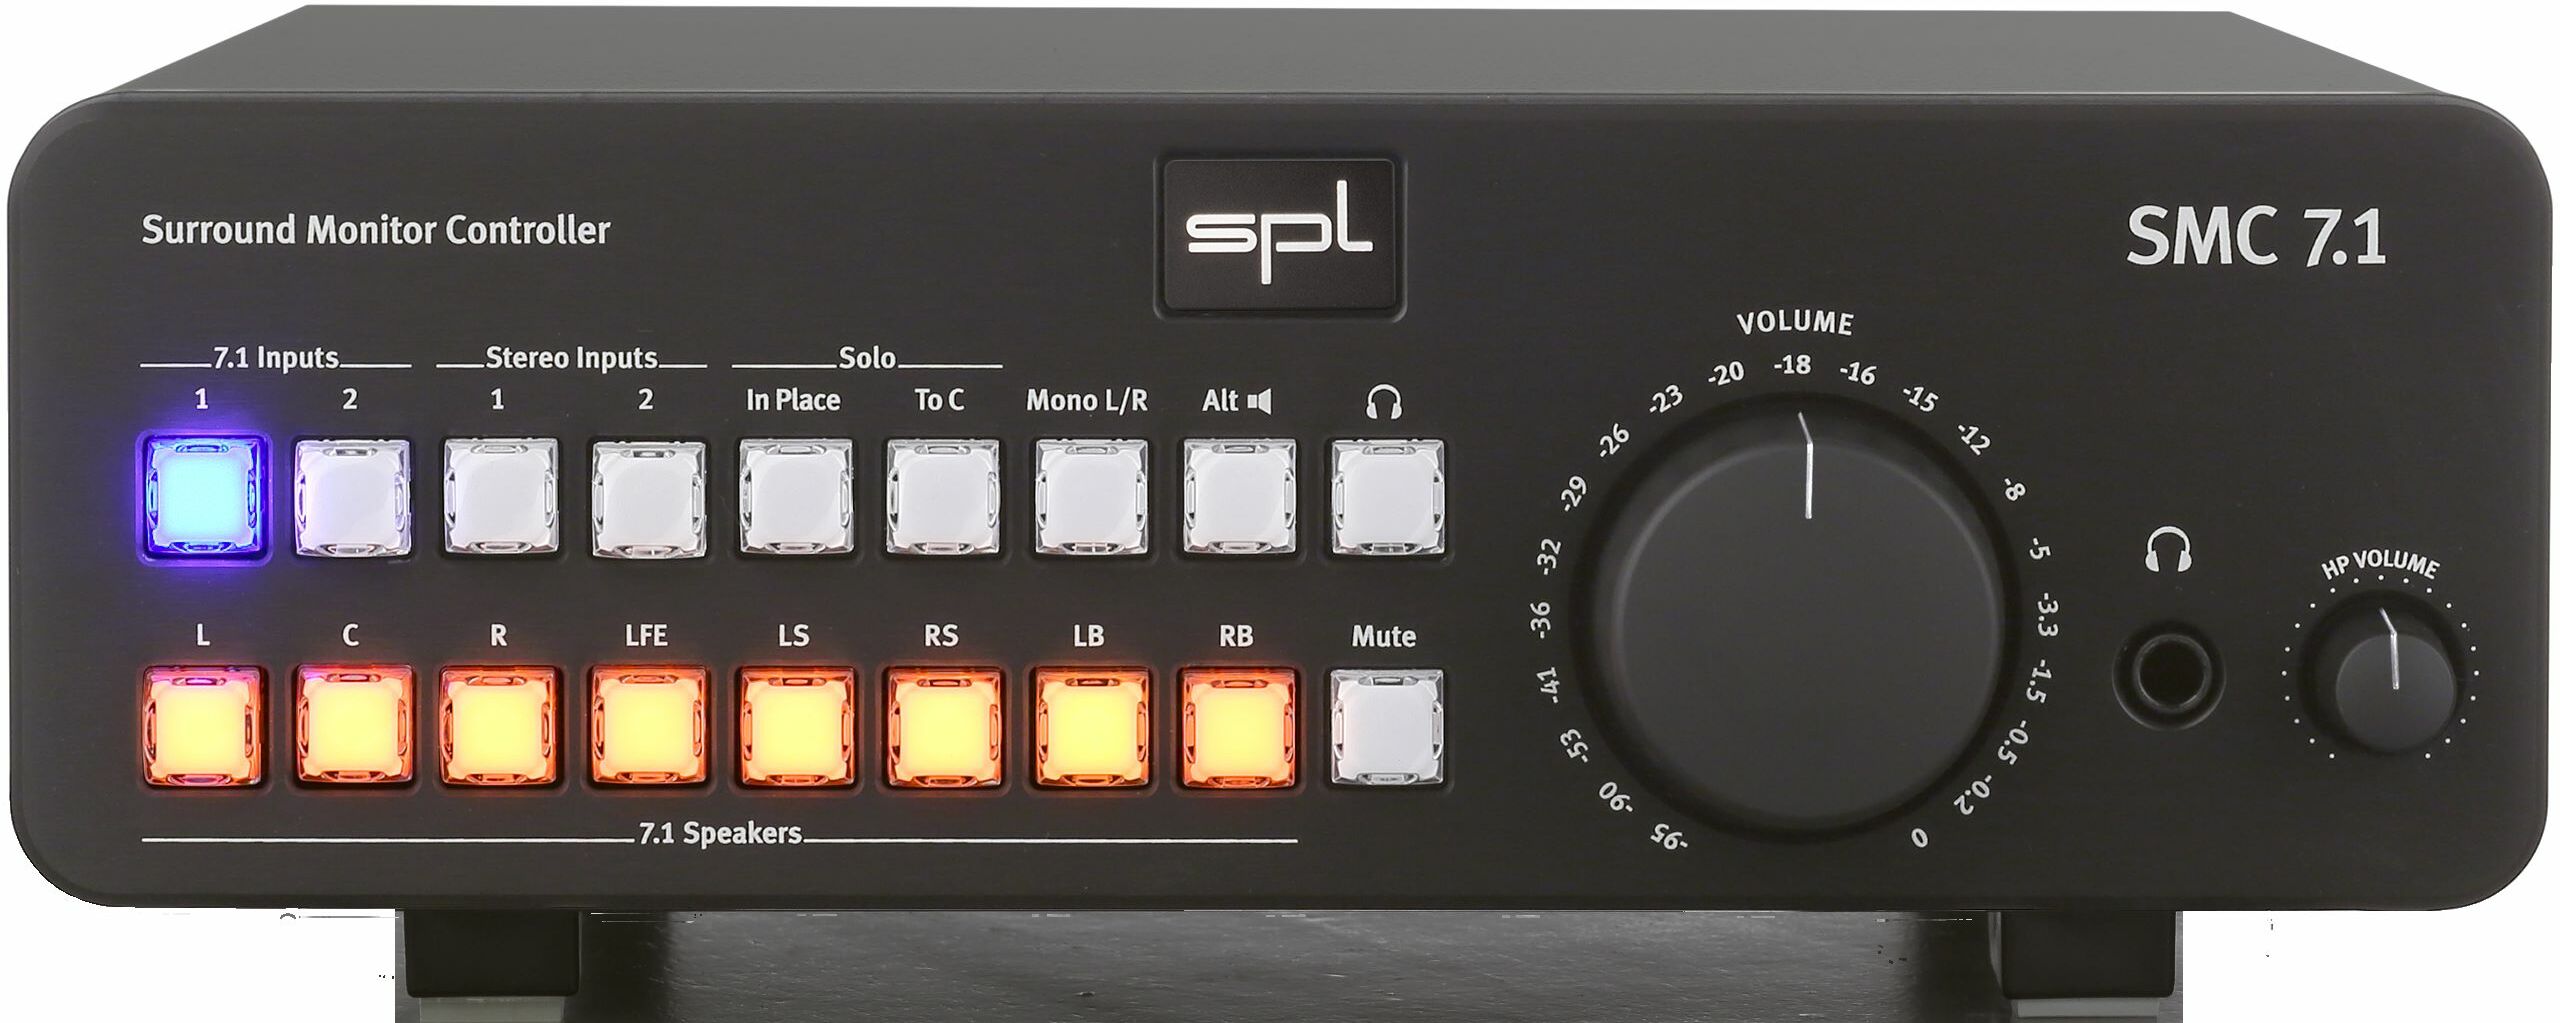 Spl Smc 7.1 - Monitor controller - Main picture